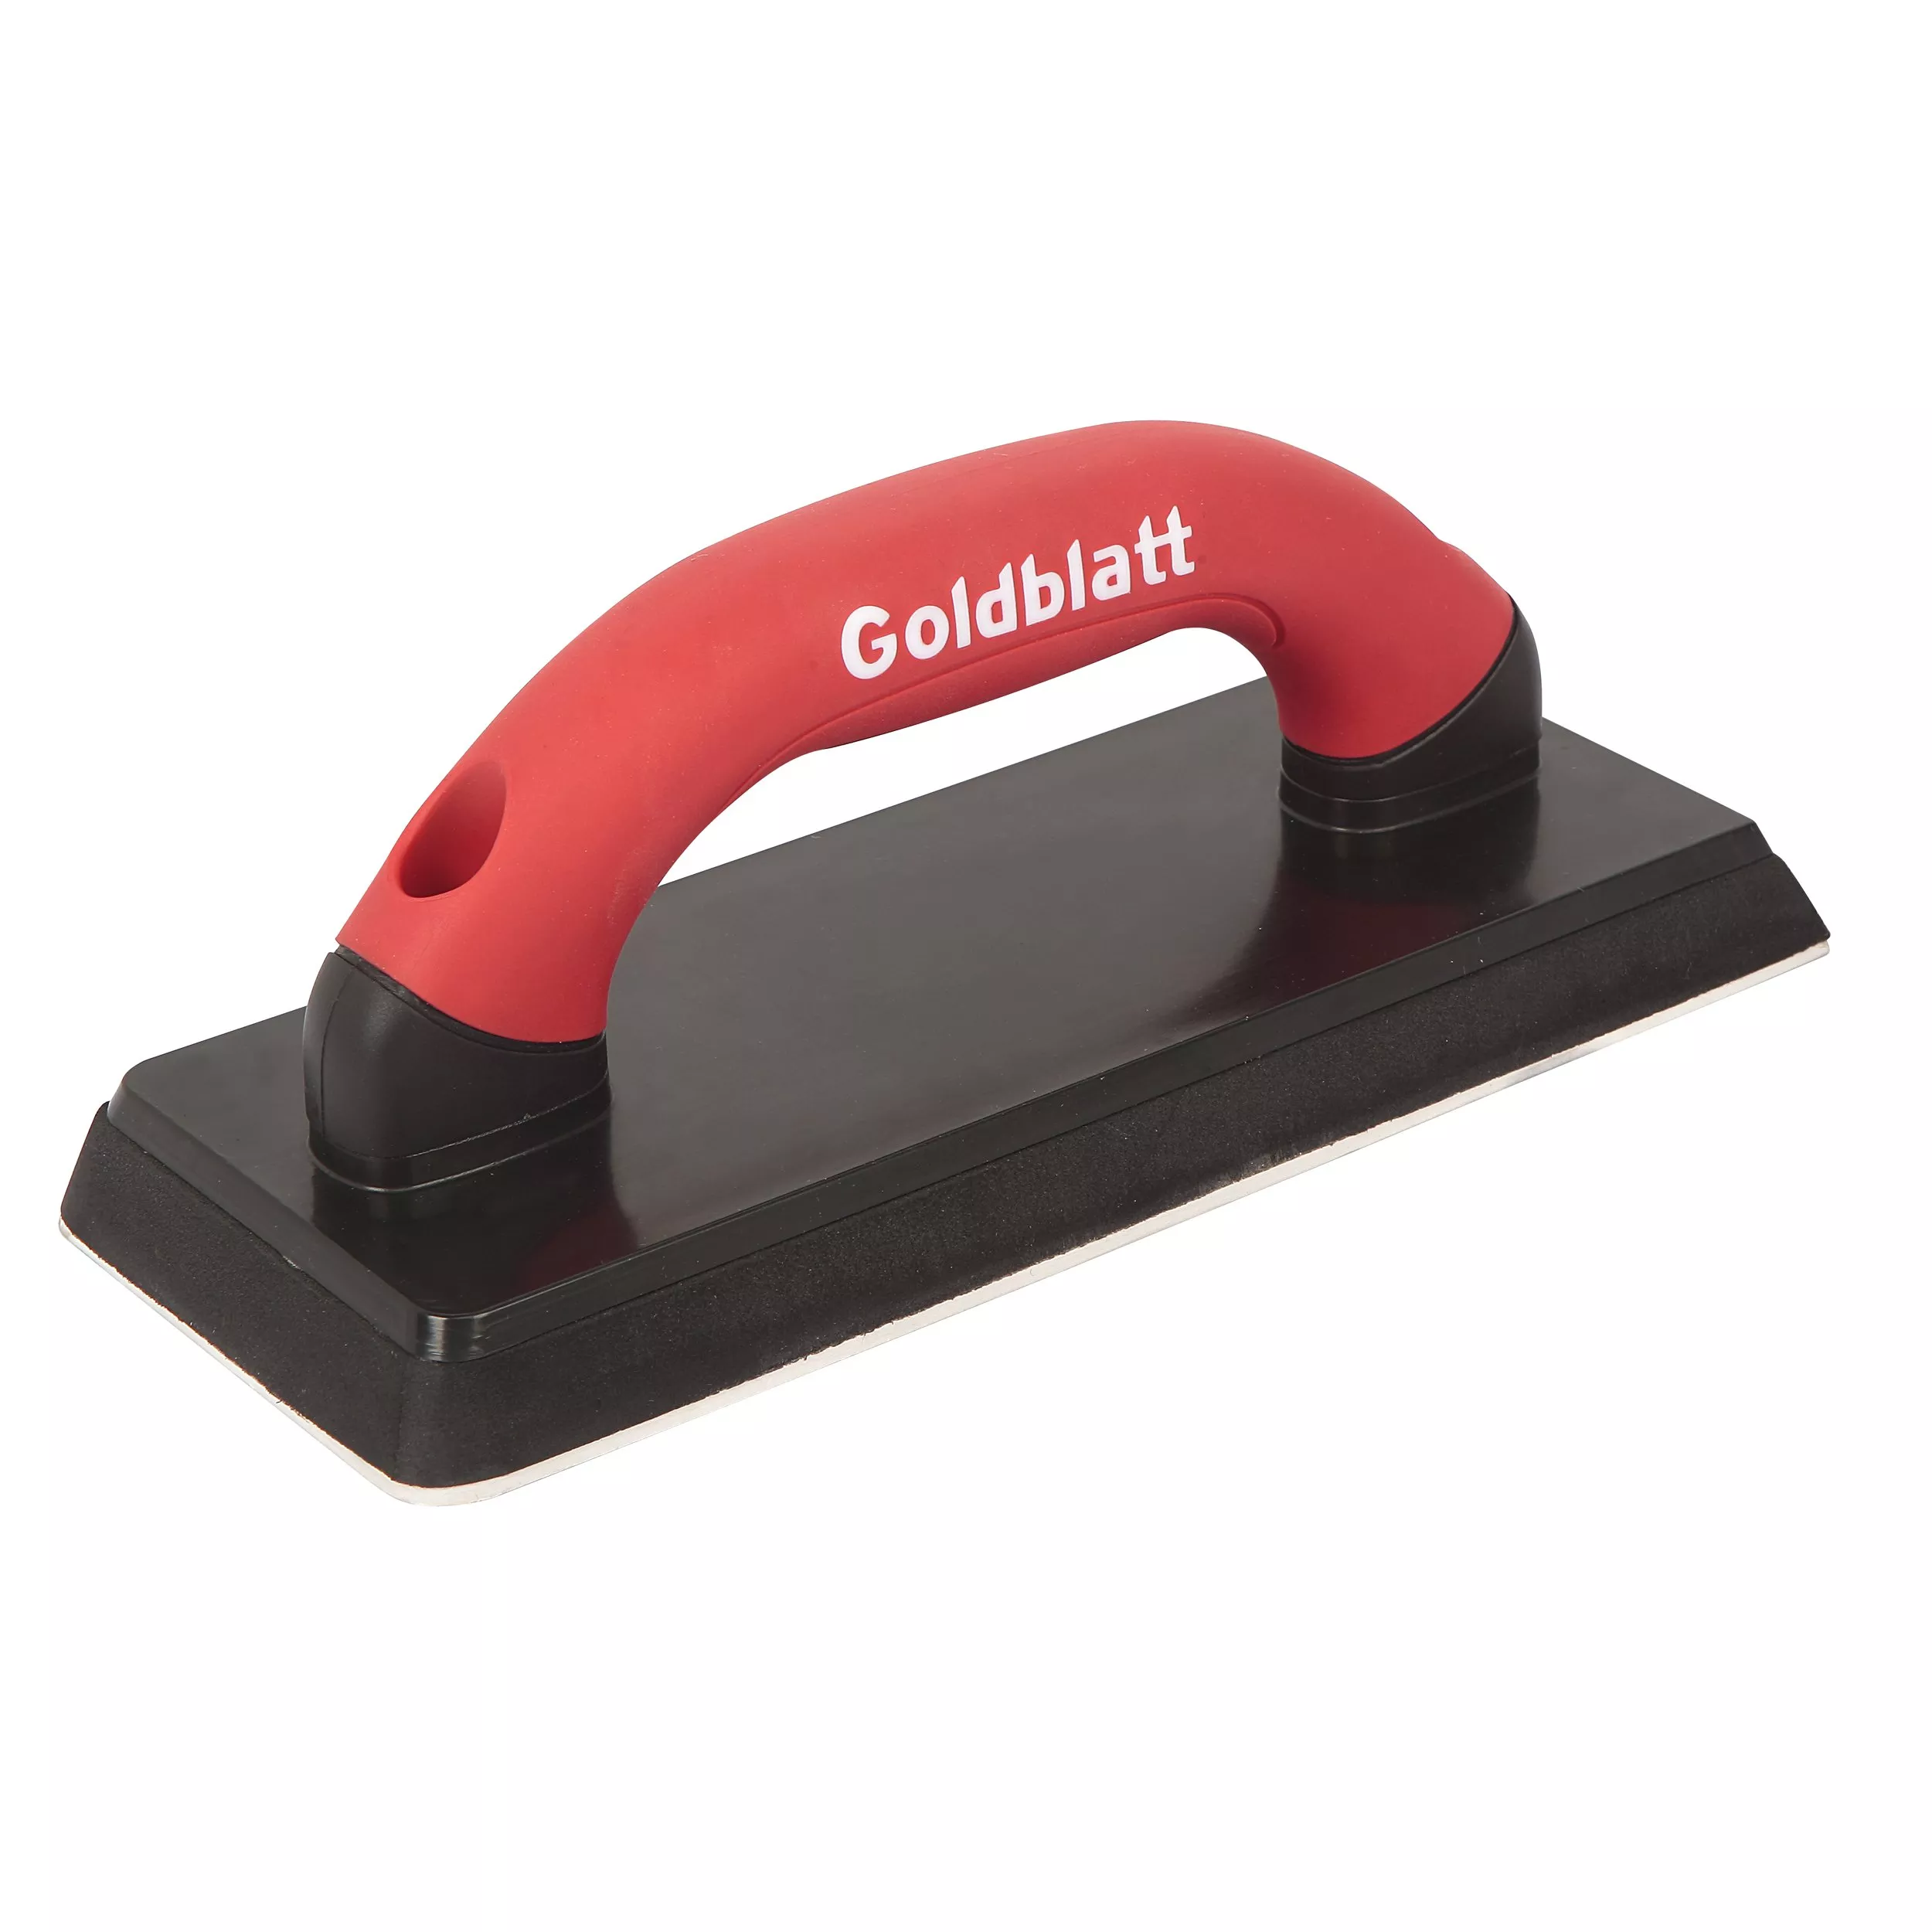 Goldblatt Pro Gum Rubber Grout Float